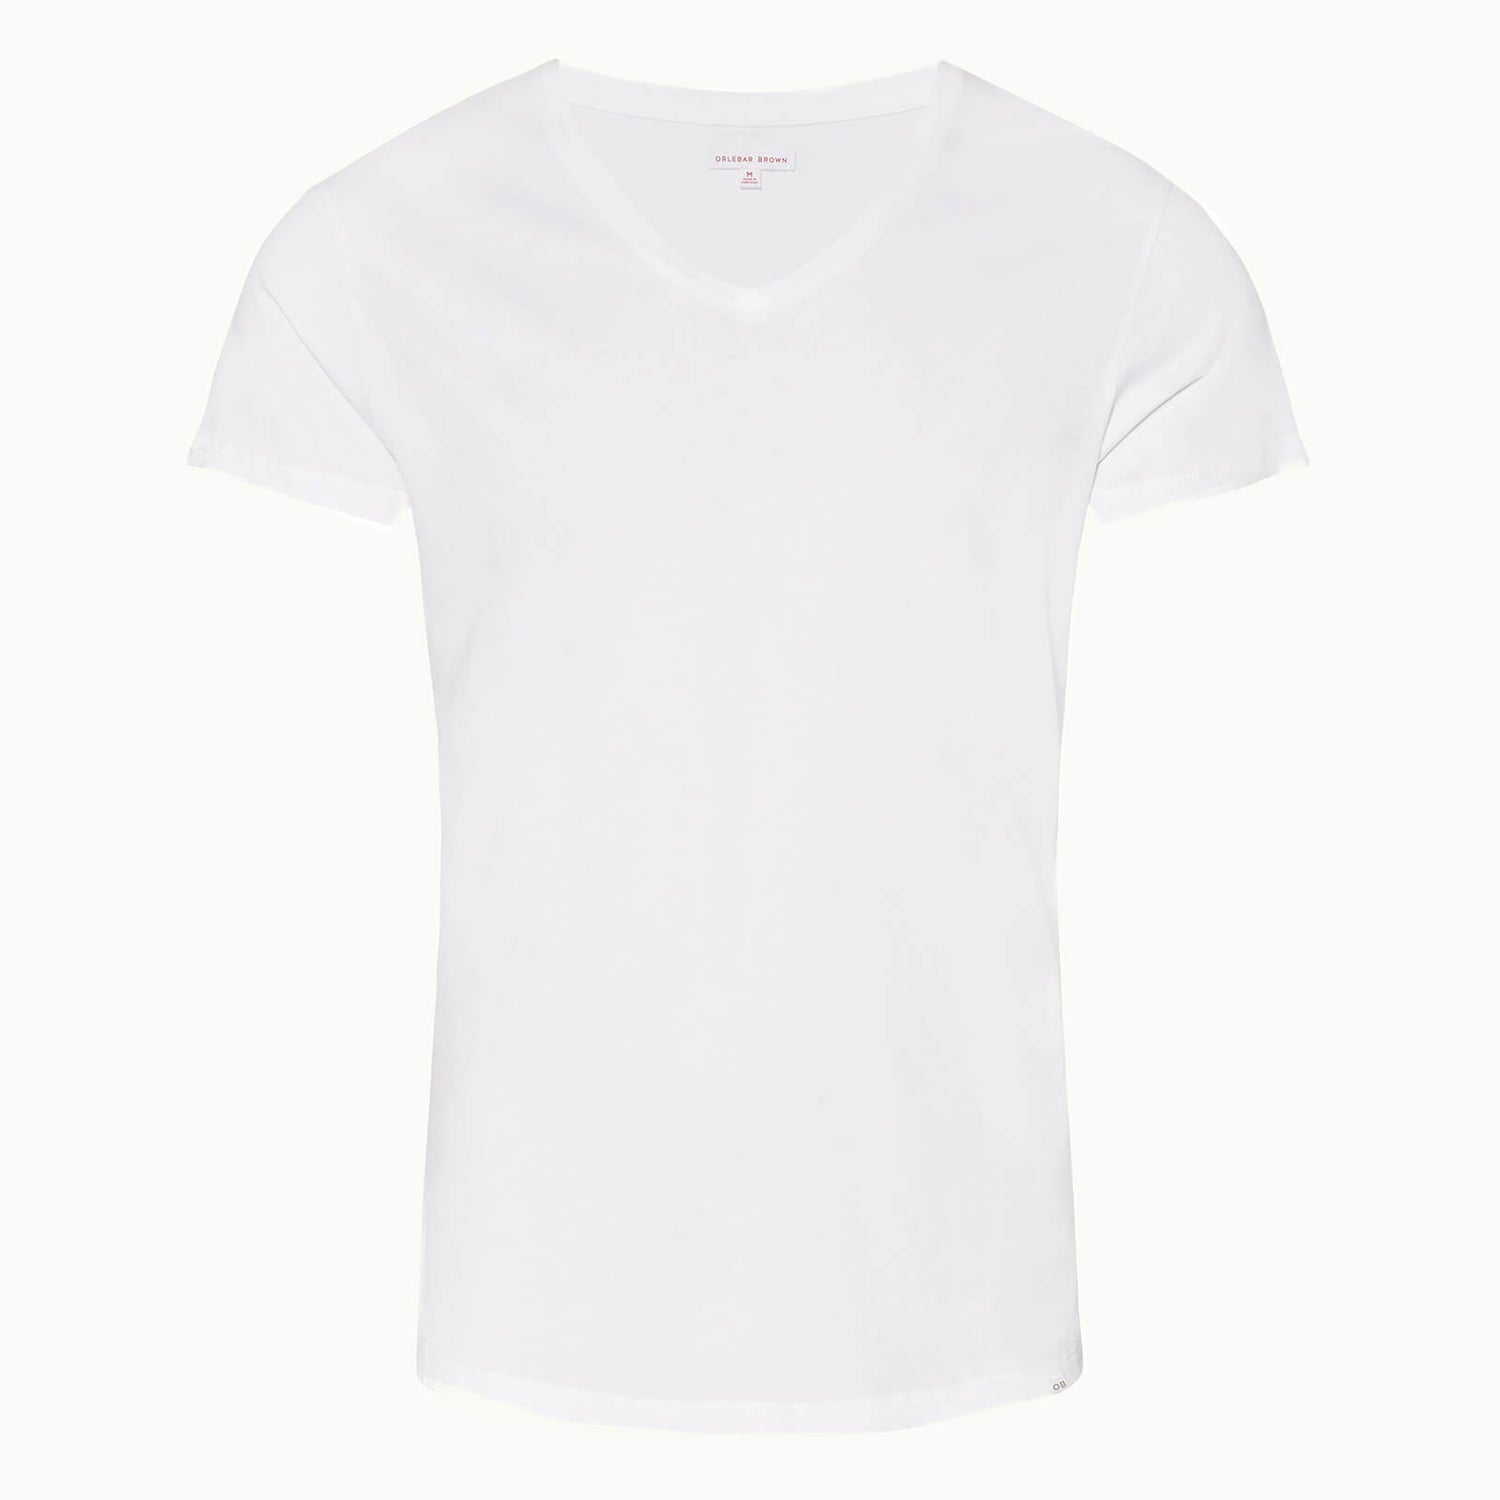 Orlebar Brown Men's Obv V Neck T-Shirt - White - M